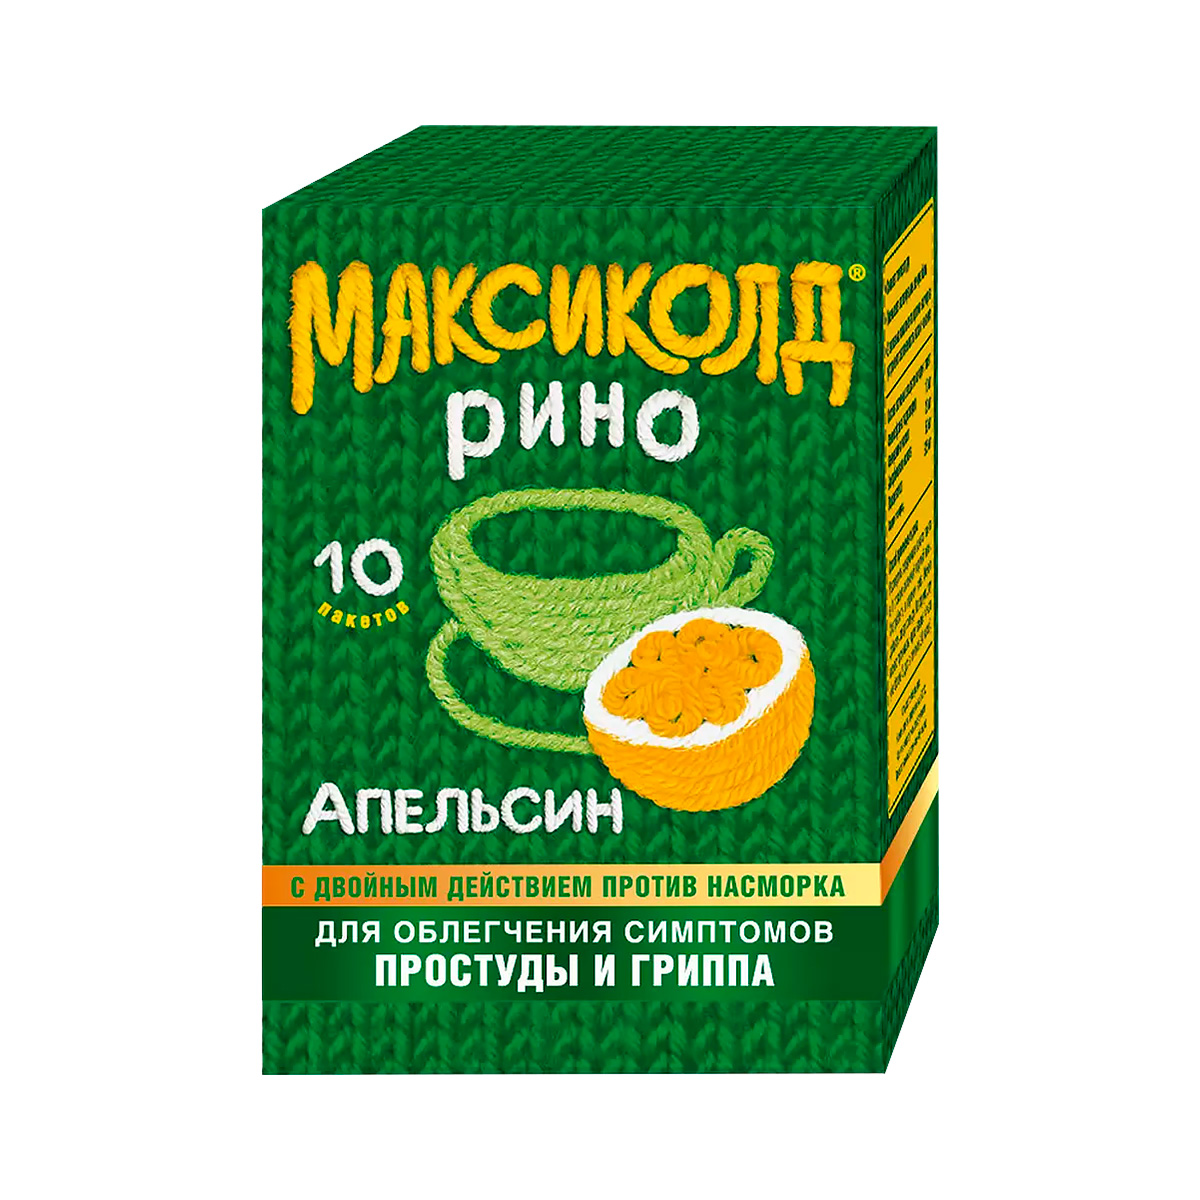 Максиколд Рино апельсин порошок для приготовления раствора для приема внутрь 15 г пакет 10 шт